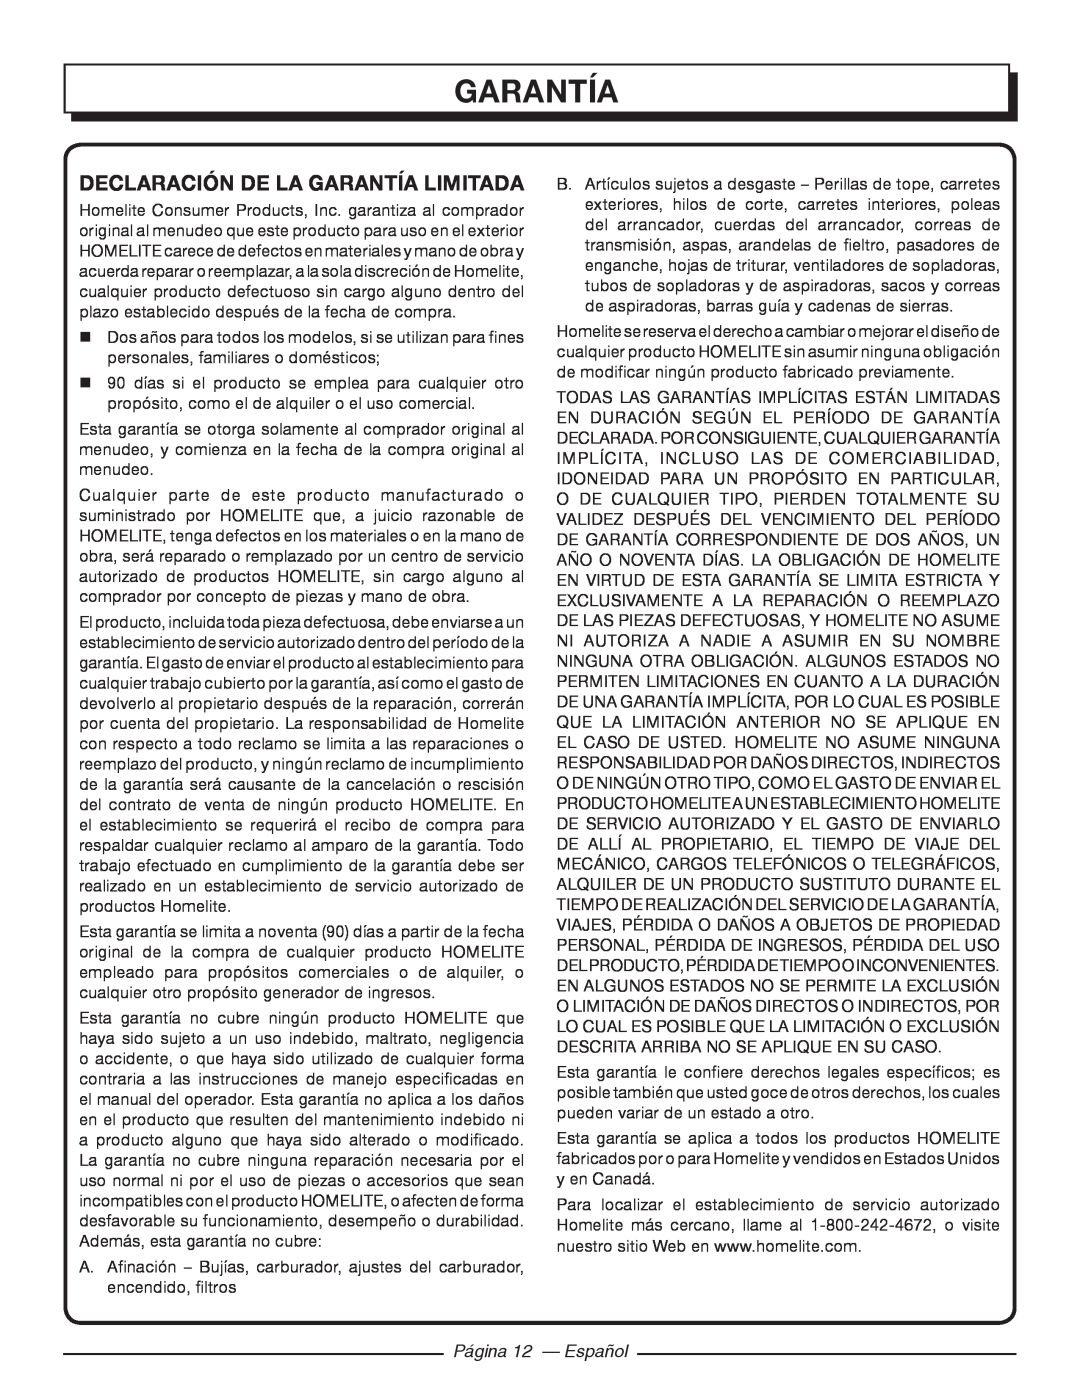 Homelite UT21006 manuel dutilisation Declaración De La Garantía Limitada, Página 12 - Español 